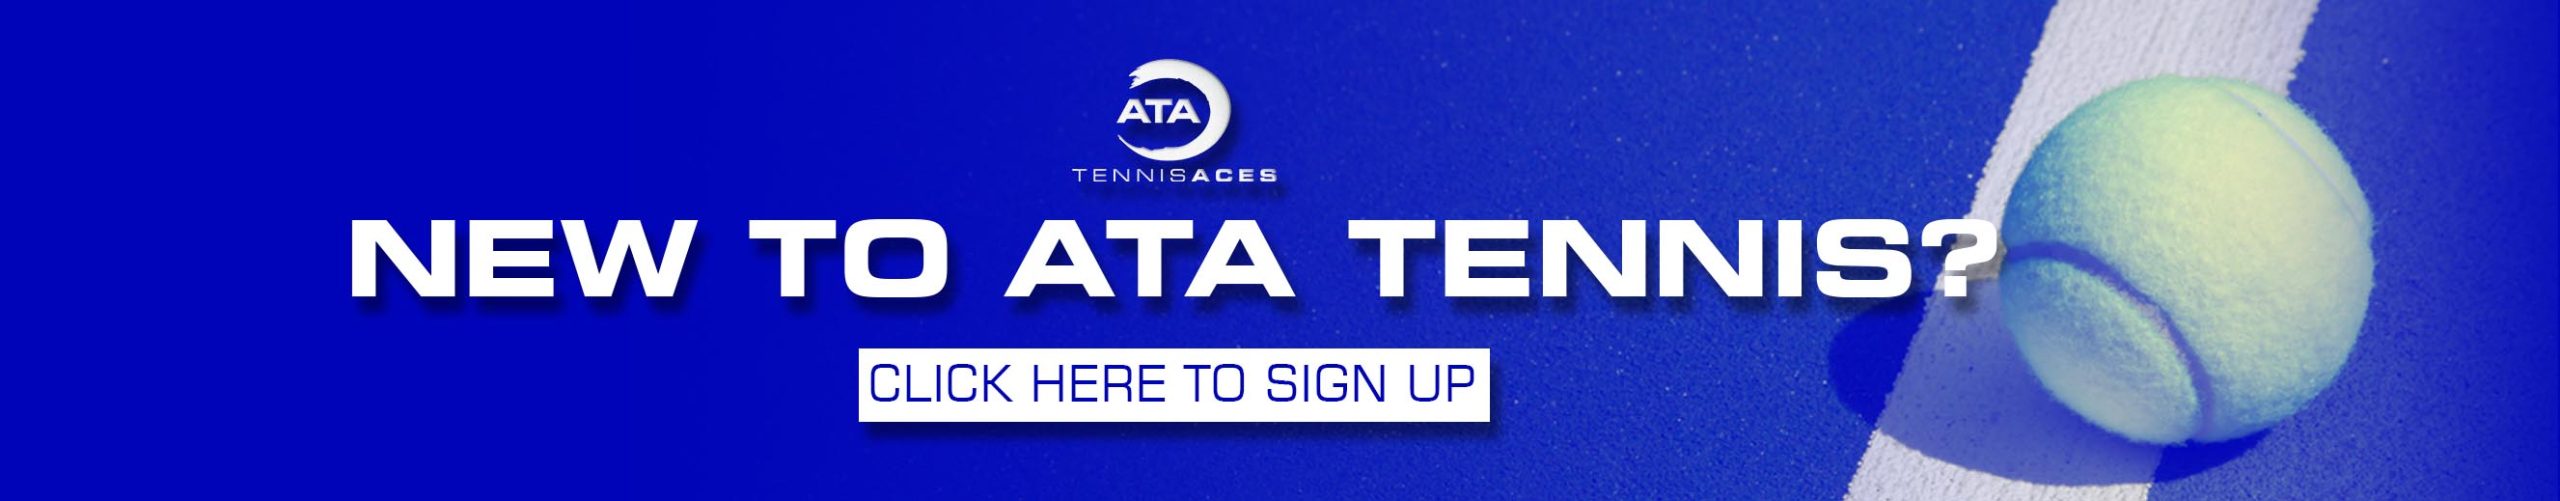 new to ata tennis